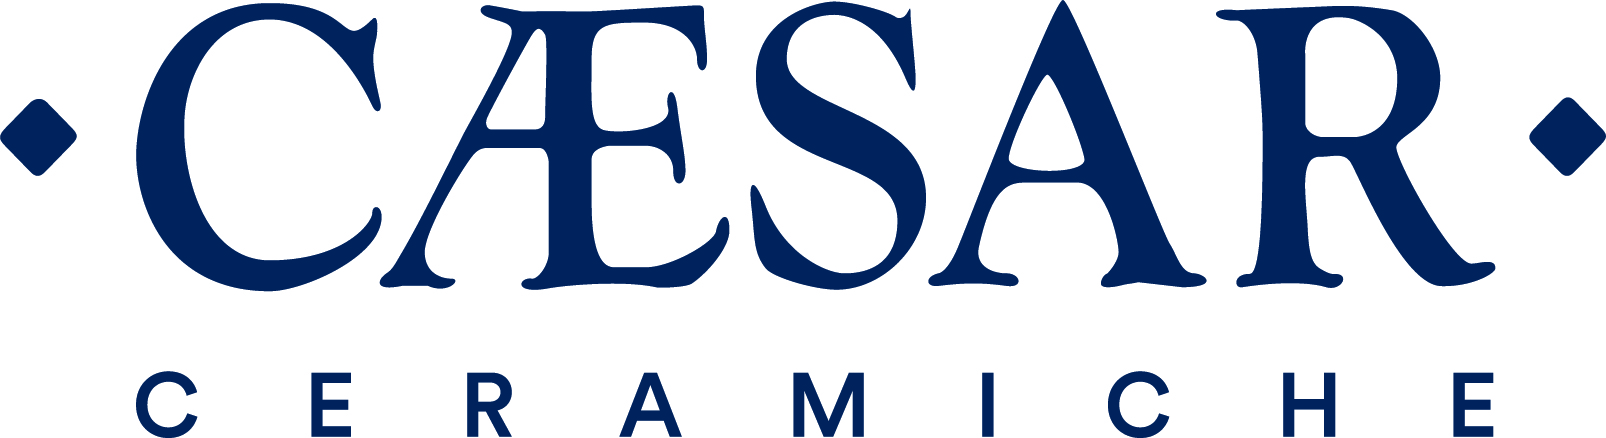 Ceramiche Caesar logo